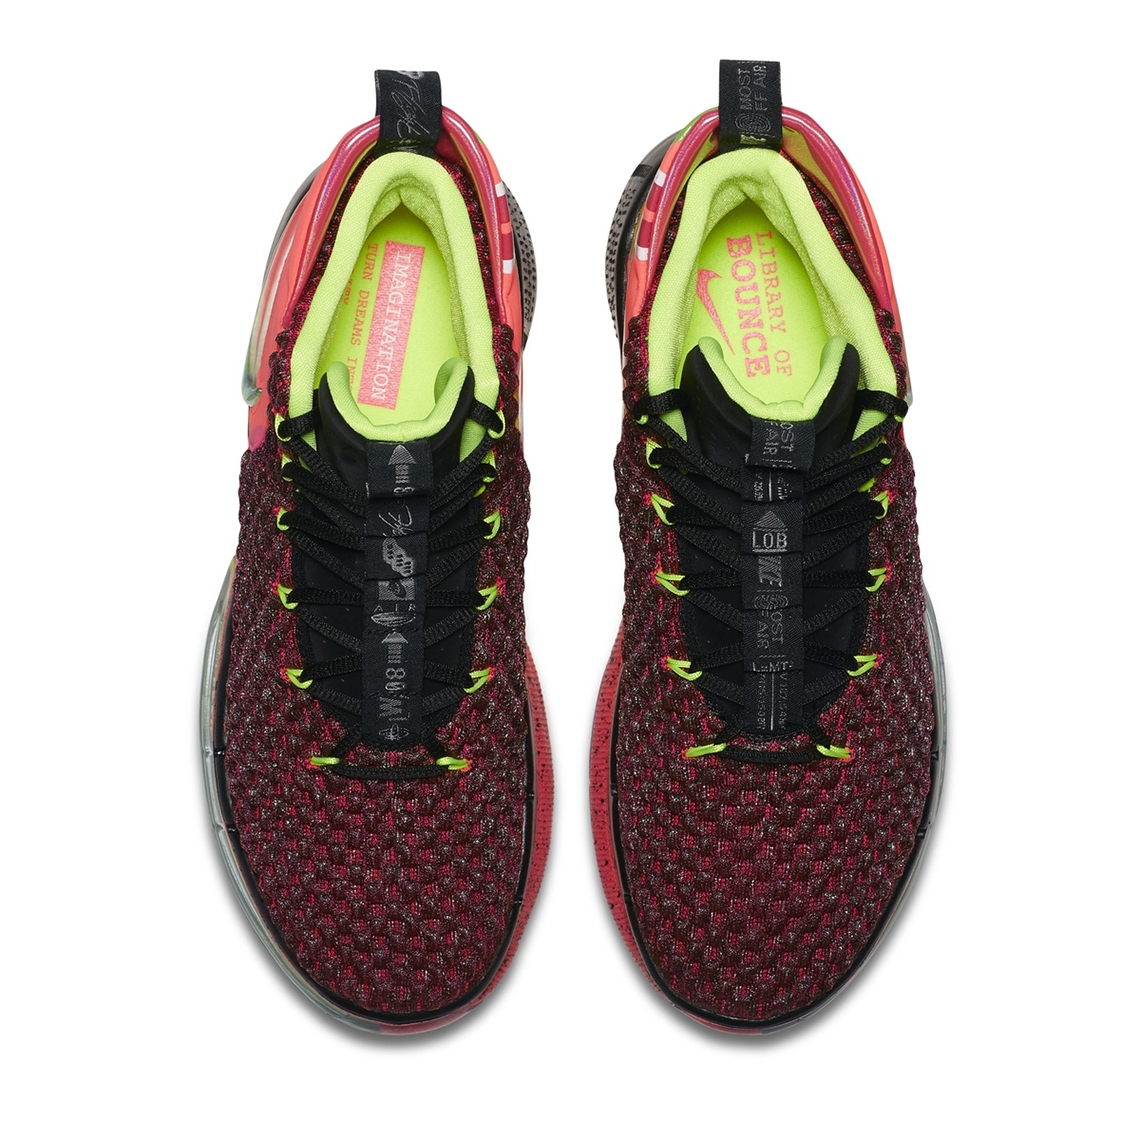 Alphadunk BQ5401-600 Release Info | SneakerNews.com